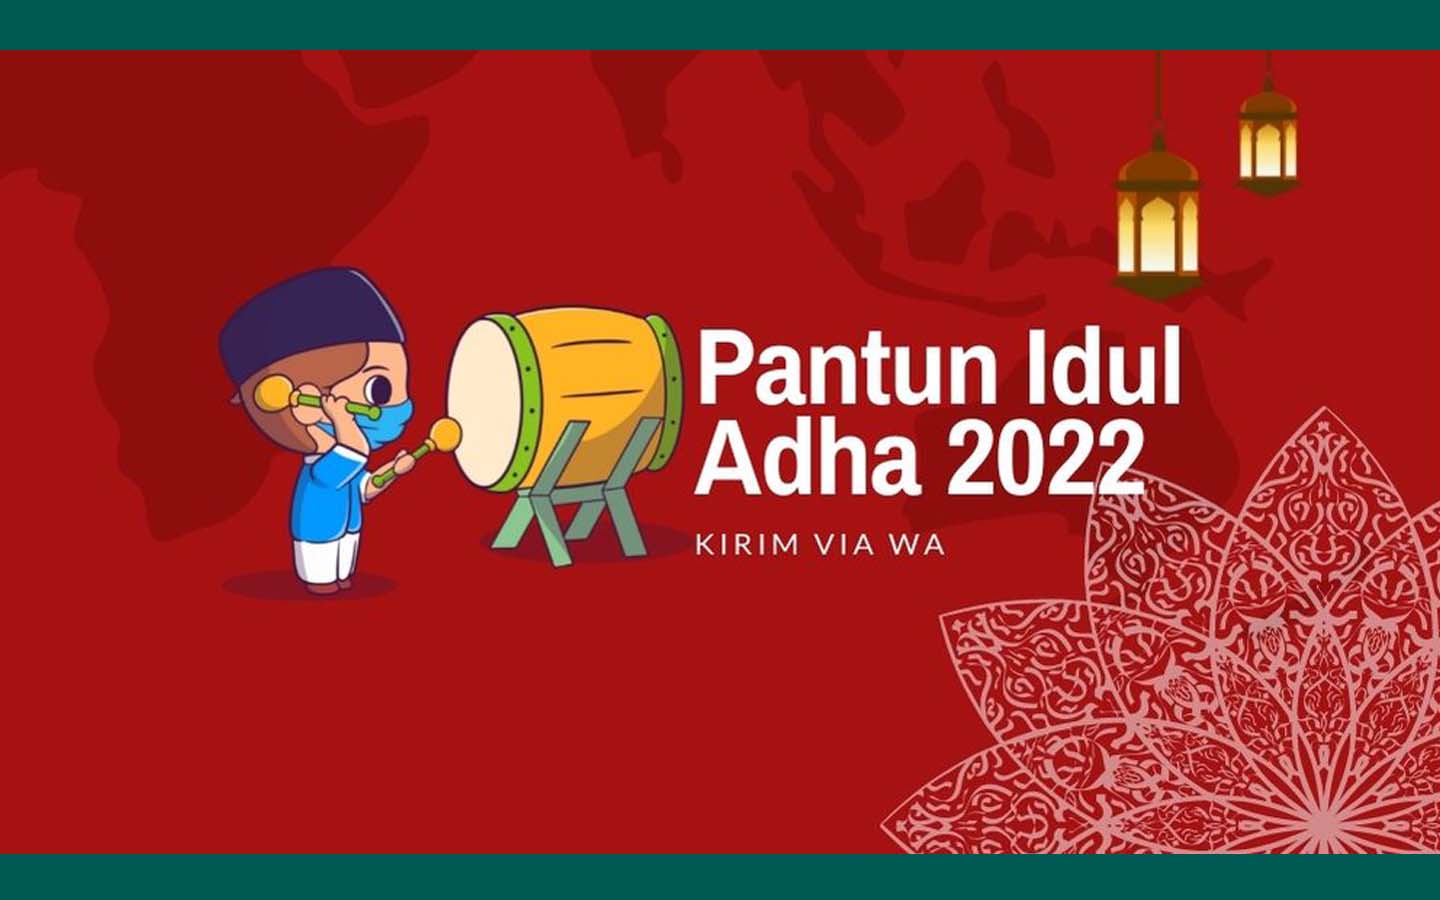 20 Pantun Lucu Ucapan Idul Adha Tahun 2022, Cocok Dikirim Via WA 